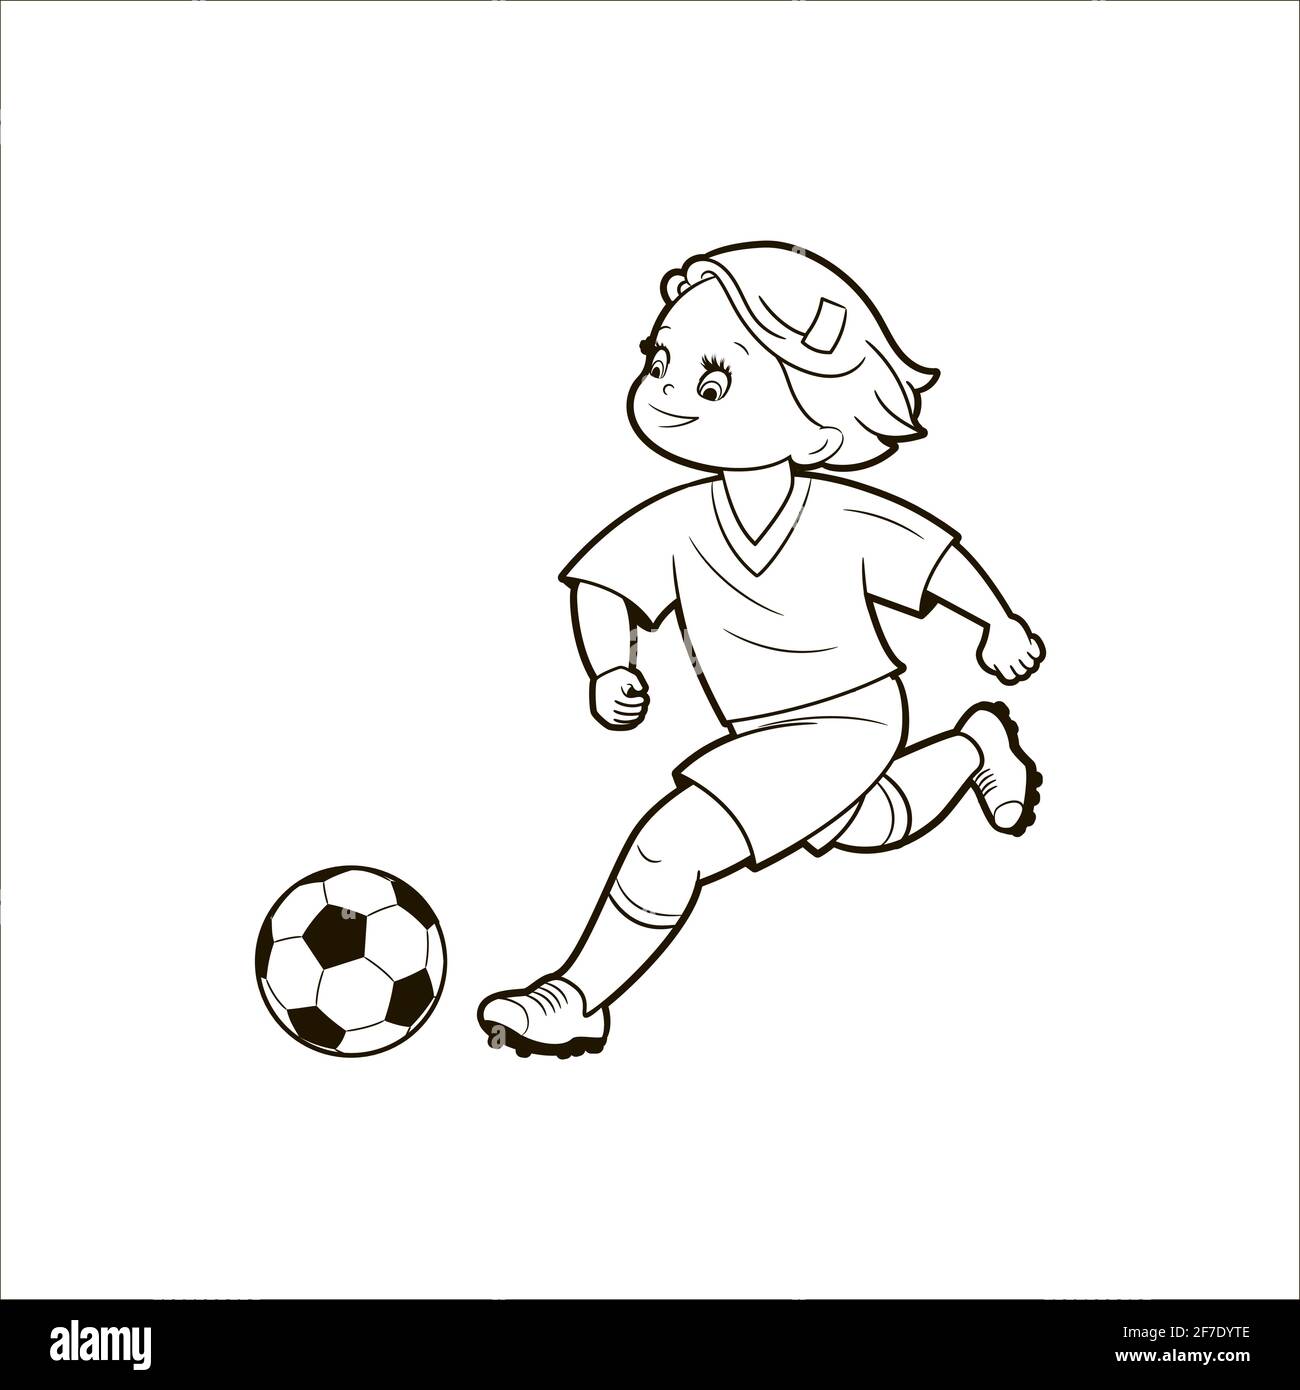 Teenager-Mädchen spielen Fußball, indem sie einen Ball treten, während sie auf dem Fußballfeld laufen.Vektor-Illustration im Cartoon-Stil, isolierte schwarze und weiße Linienkunst Stock Vektor